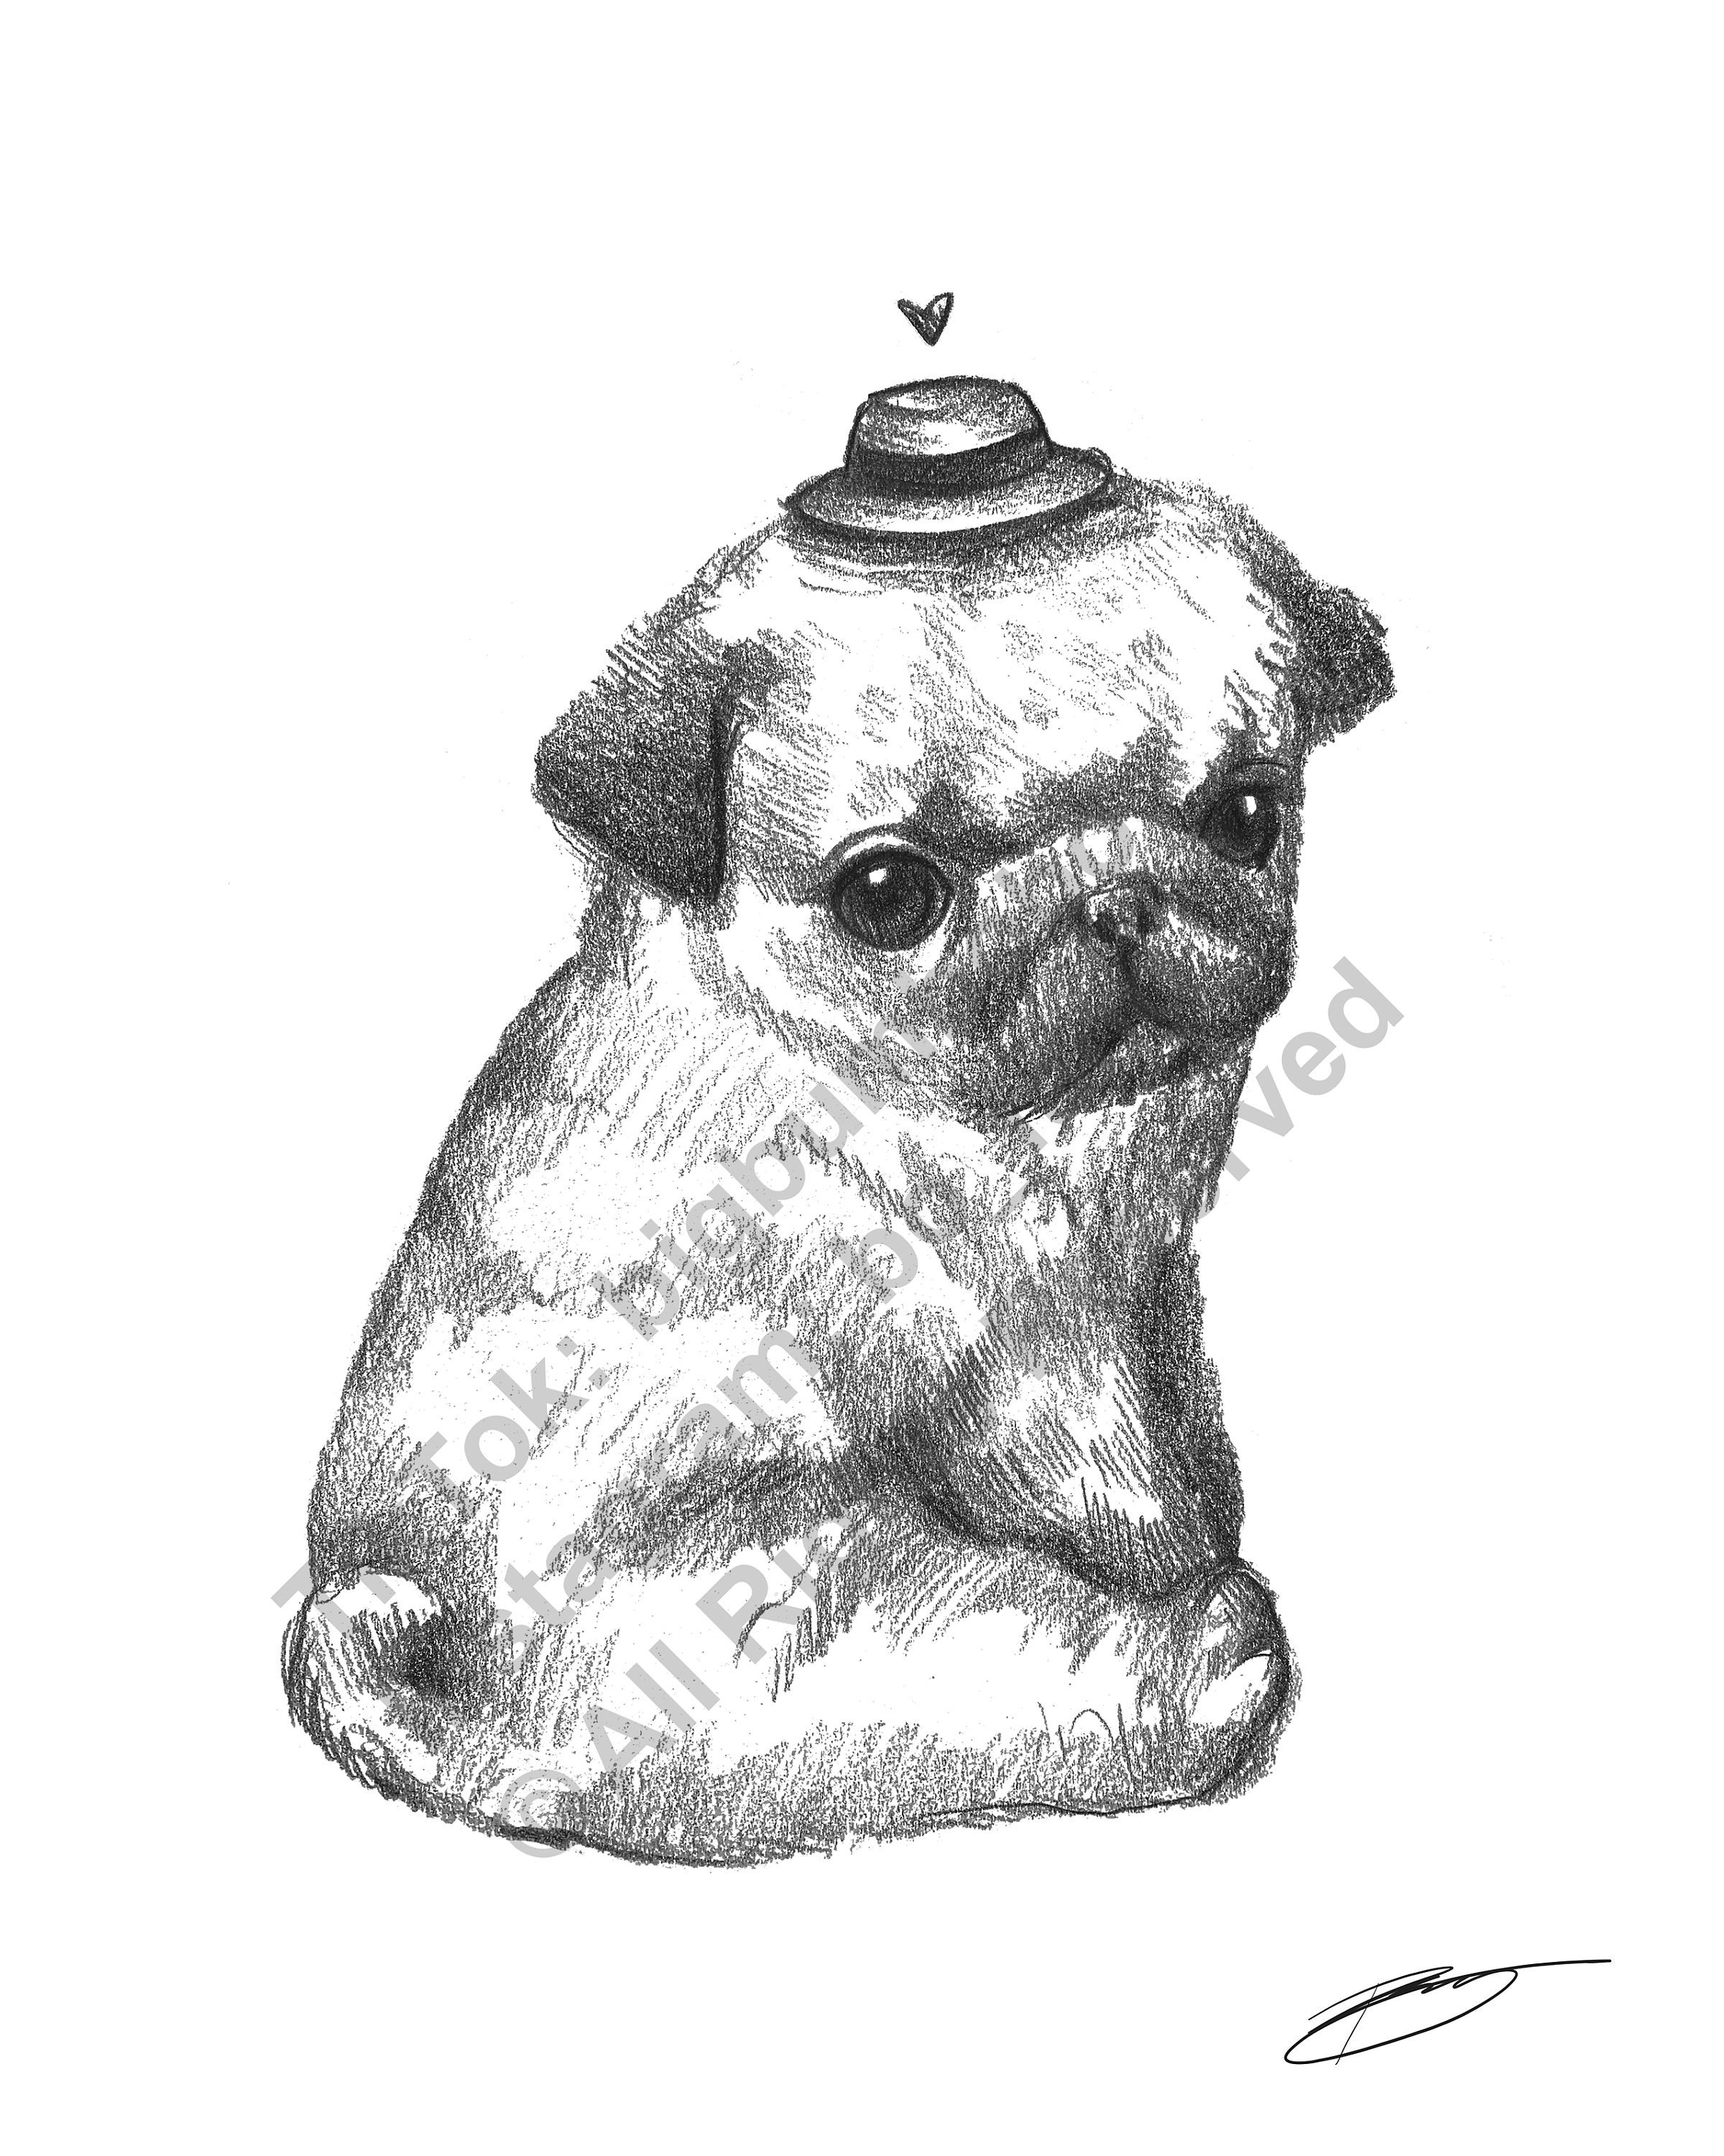 Fat Little Pug Sketch Illustration 8.5 X 11 Black